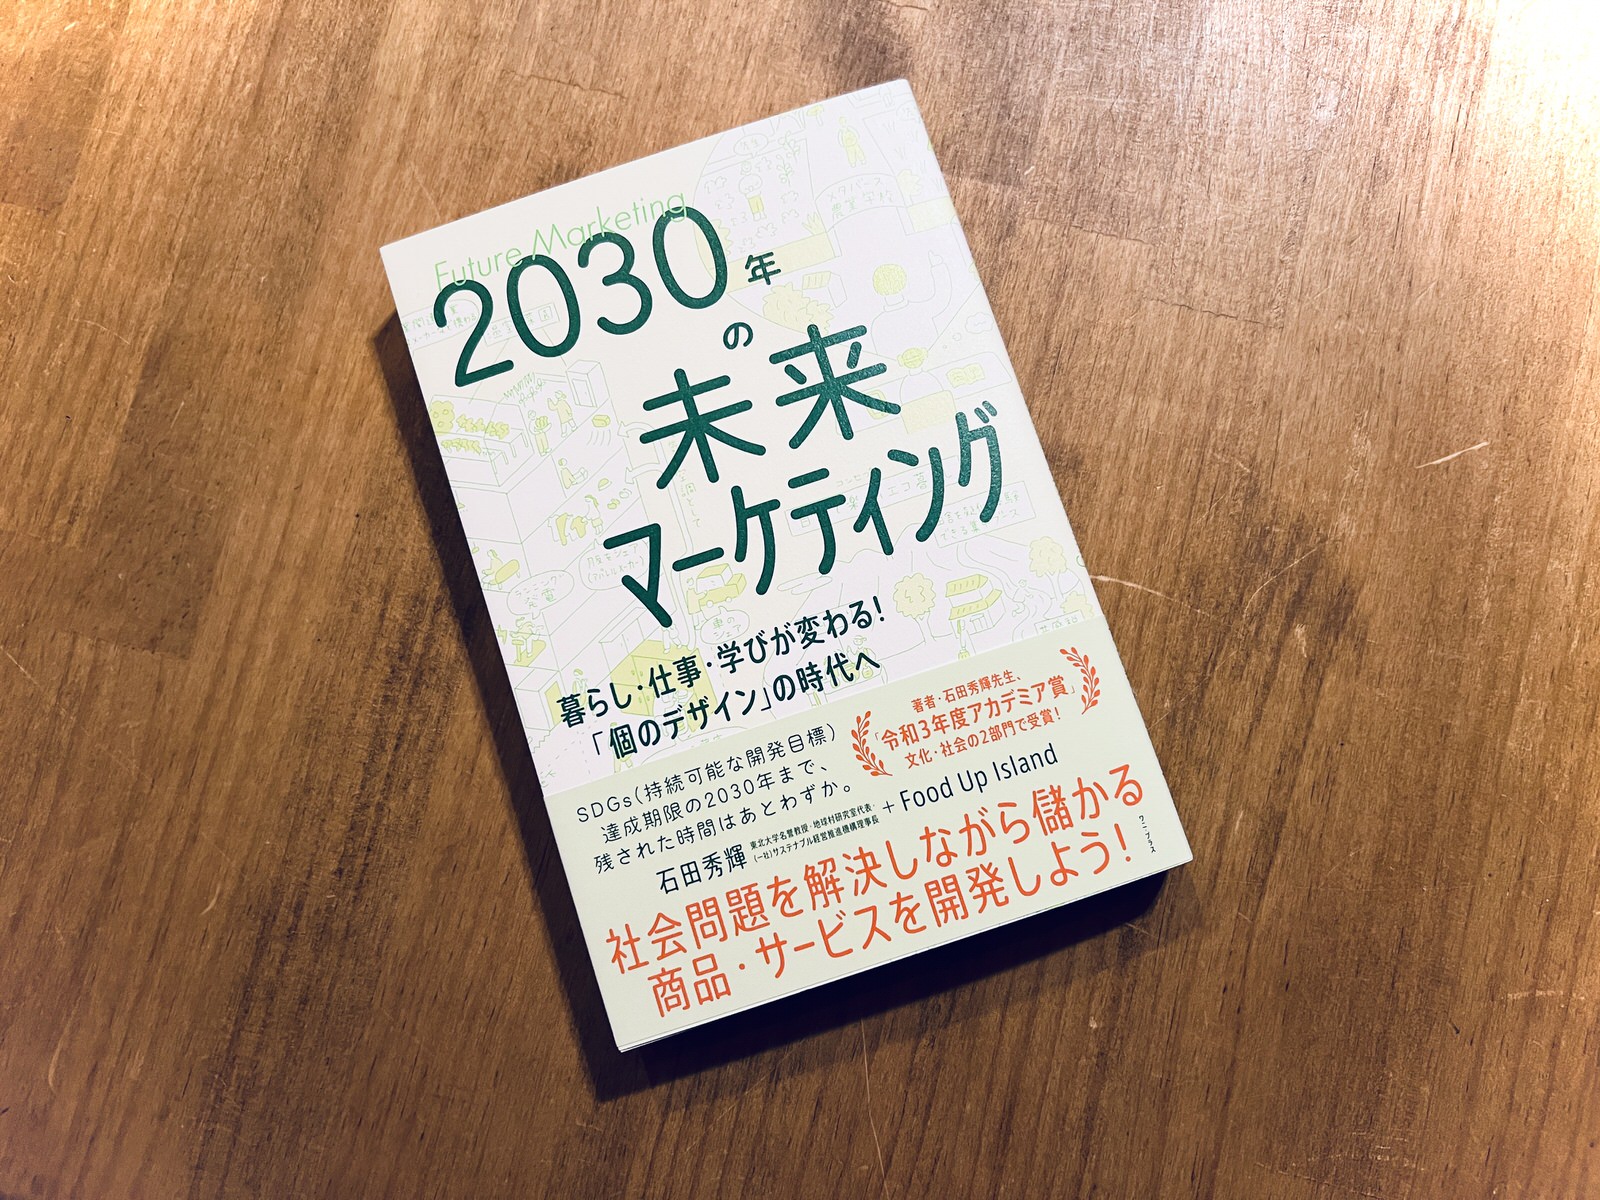 『2030年の未来マーケティング』（ワニプラス）を共同出版いたしました。